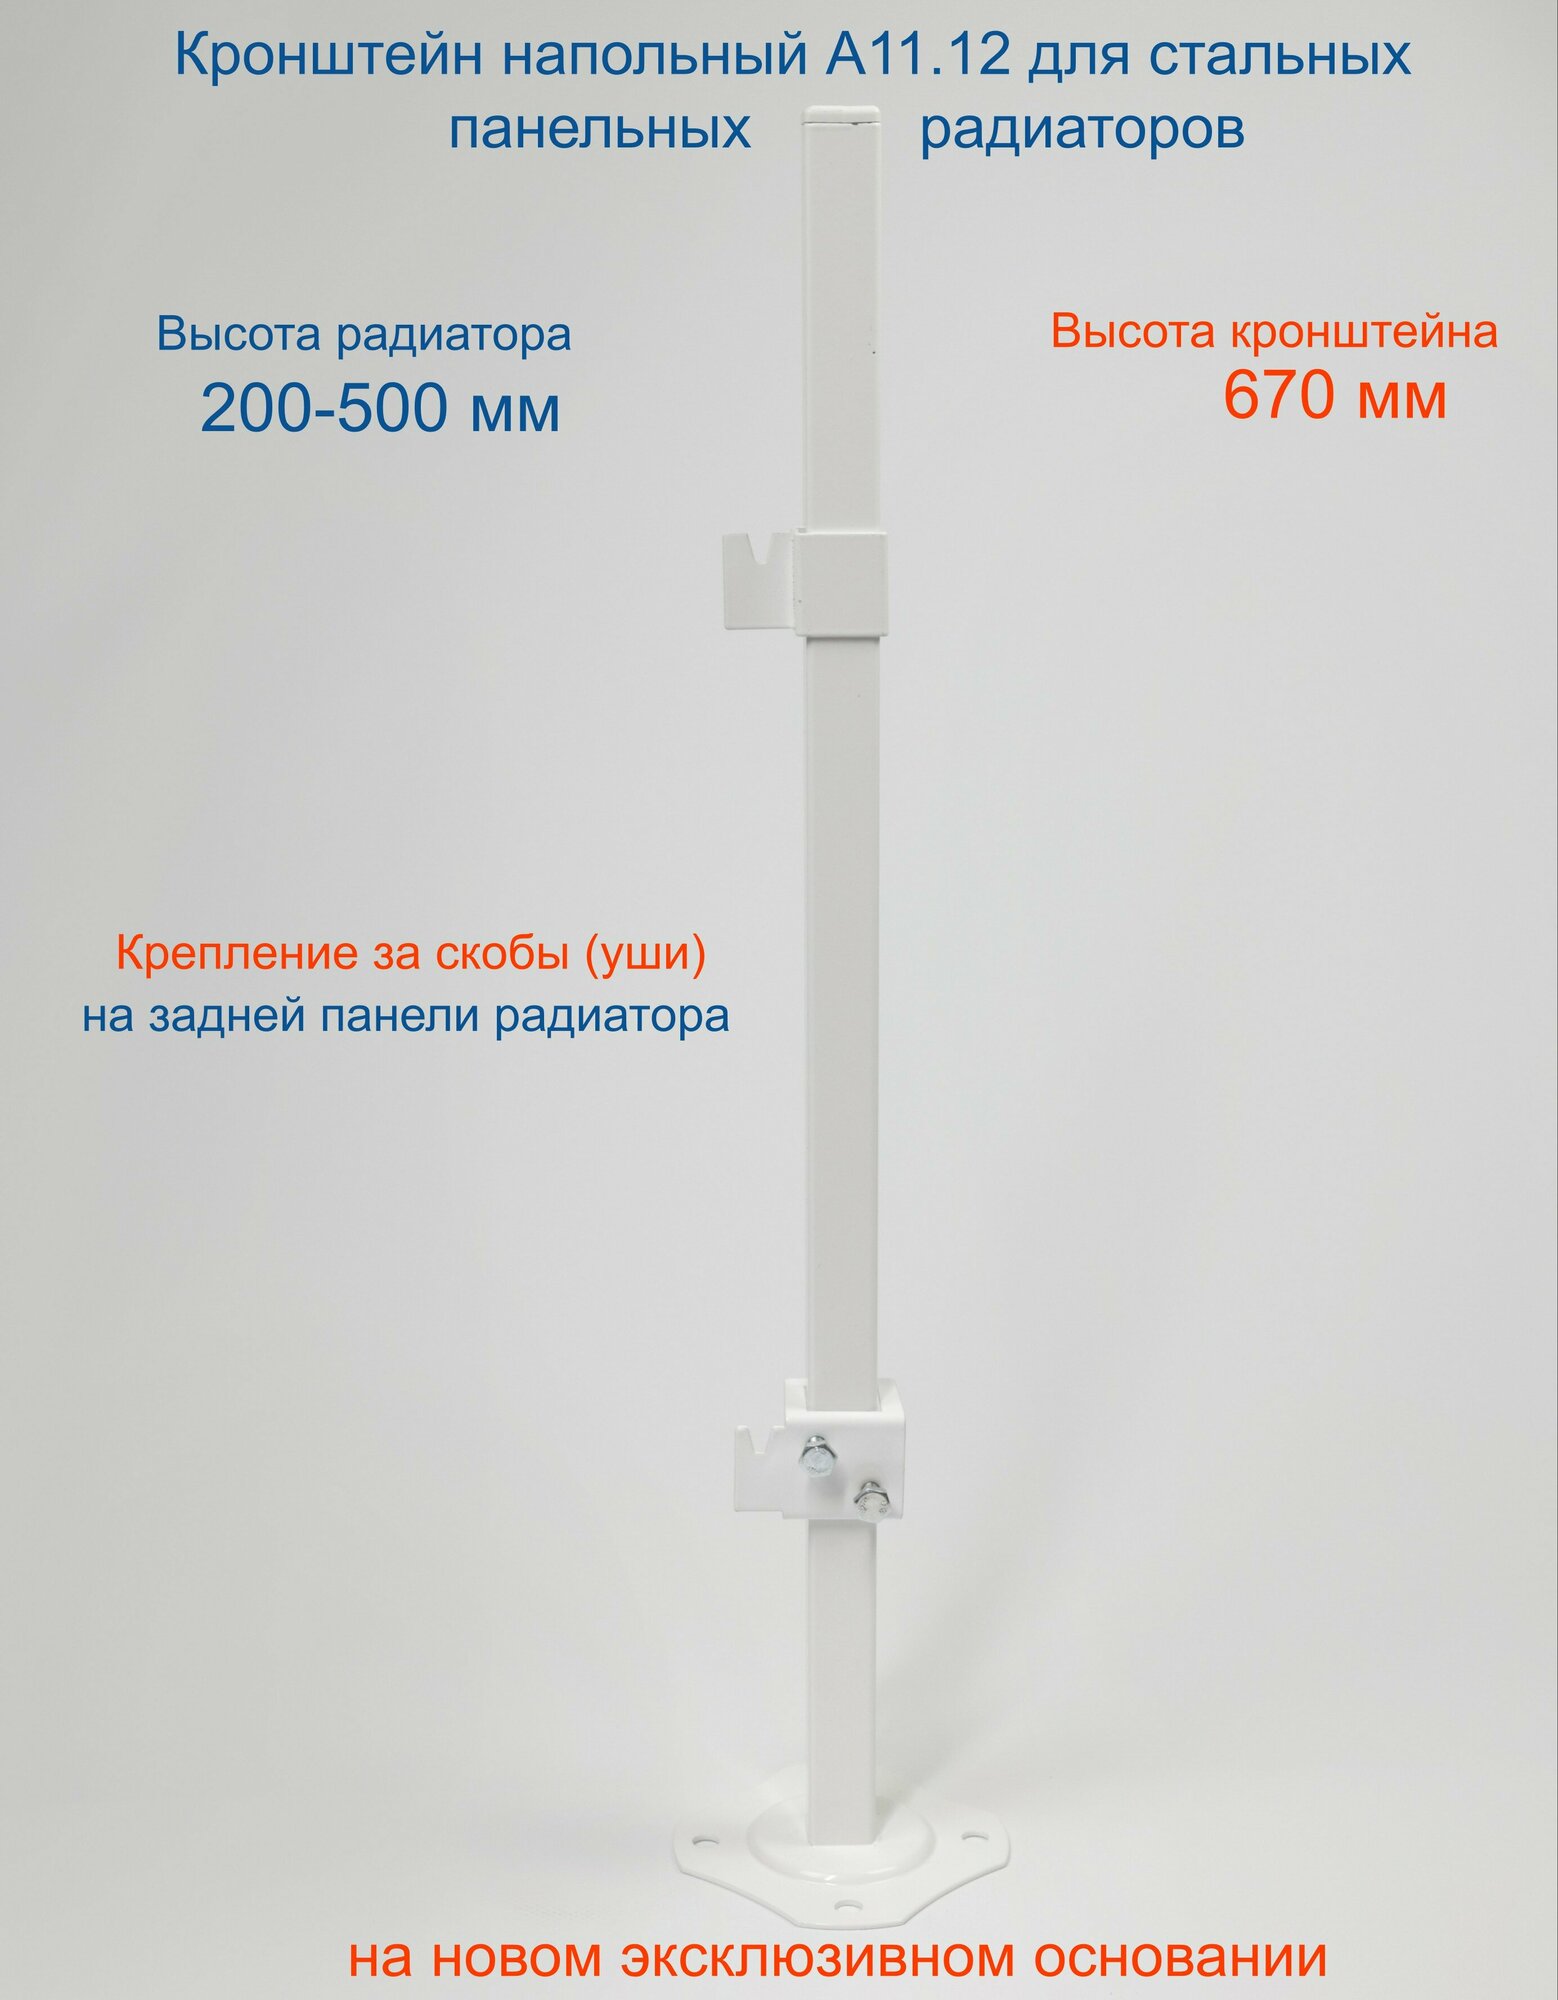 Кронштейн напольный регулируемый Кайрос А11.12 для стальных панельных радиаторов высотой 200-500 мм (высота стойки 670 мм)